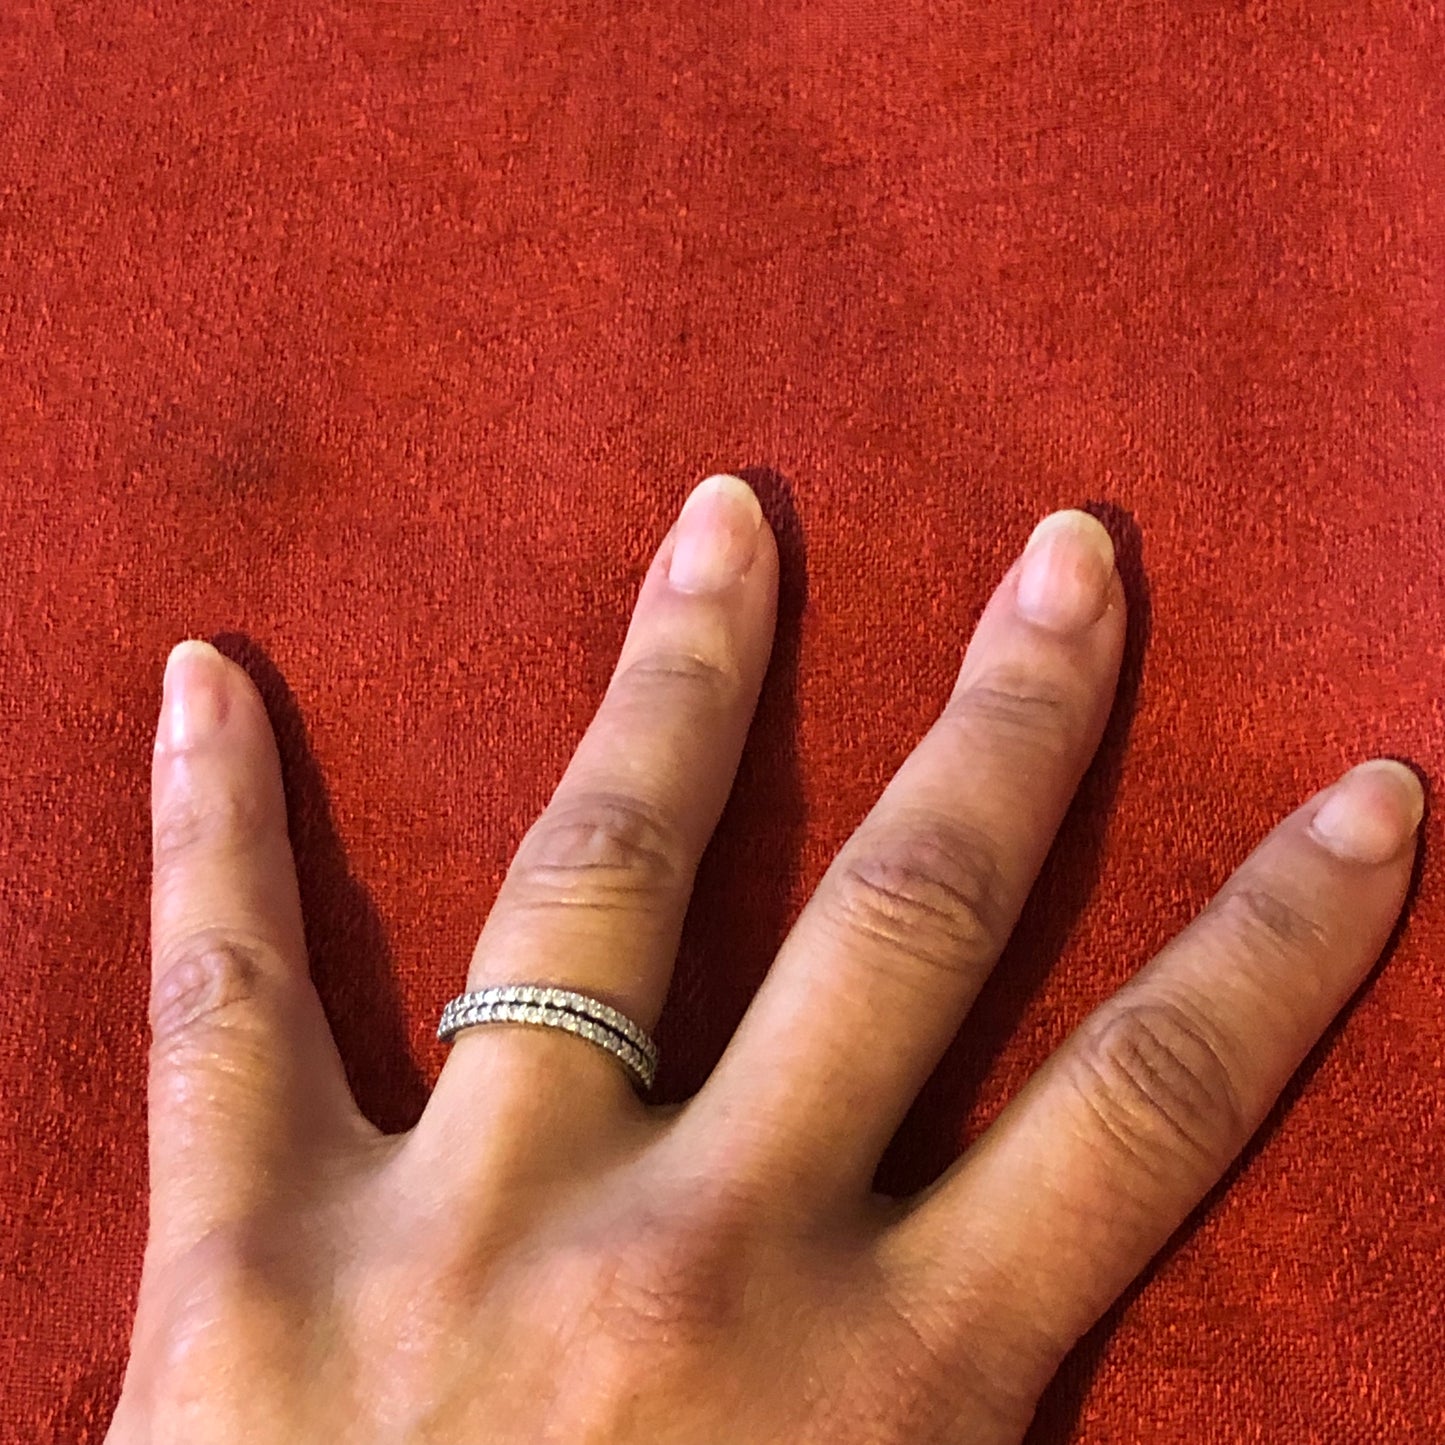 Pandora Wavy Eternity Ring, Set of 2-Size 54 (7)